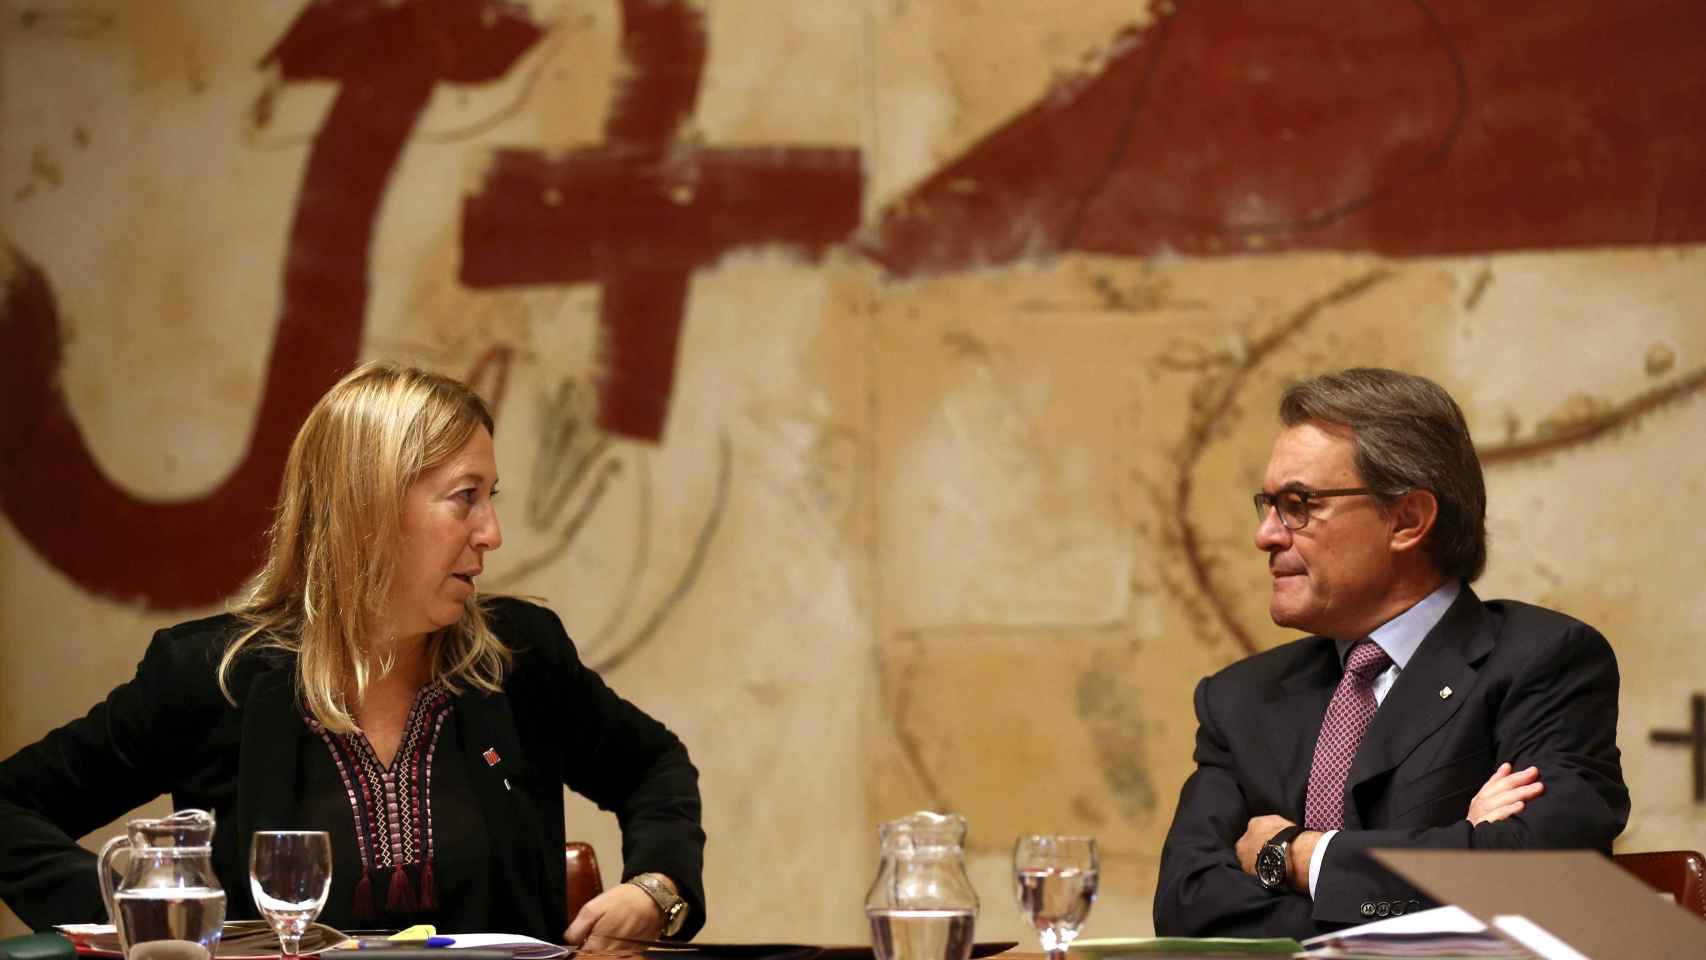 El presidente de la Generalitat en funciones, Artur Mas, y la vicepresidenta, Neus Munté, durante la reunión del gobierno catalán hoy en Barcelona.